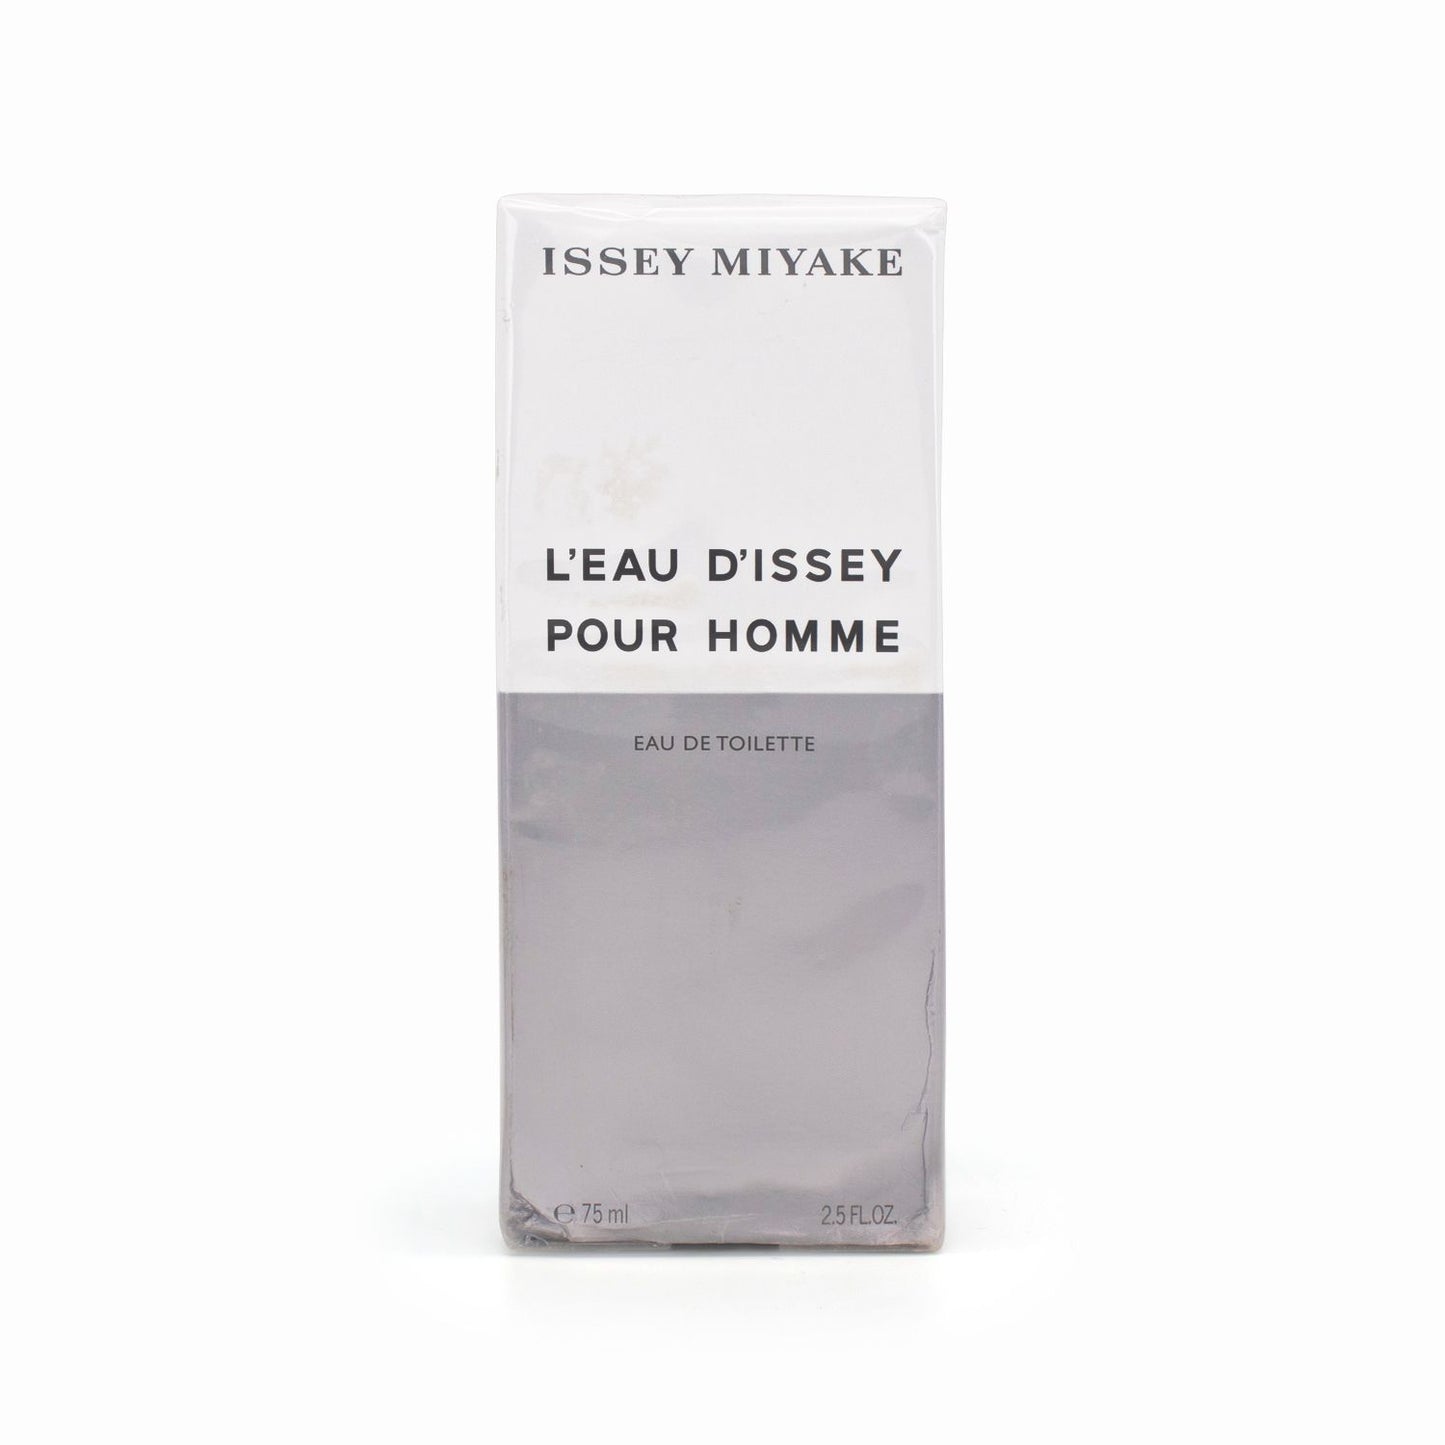 Issey Miyake L'Eau D'Issey Pour Homme Eau de Toilette 75ml - Imperfect Box